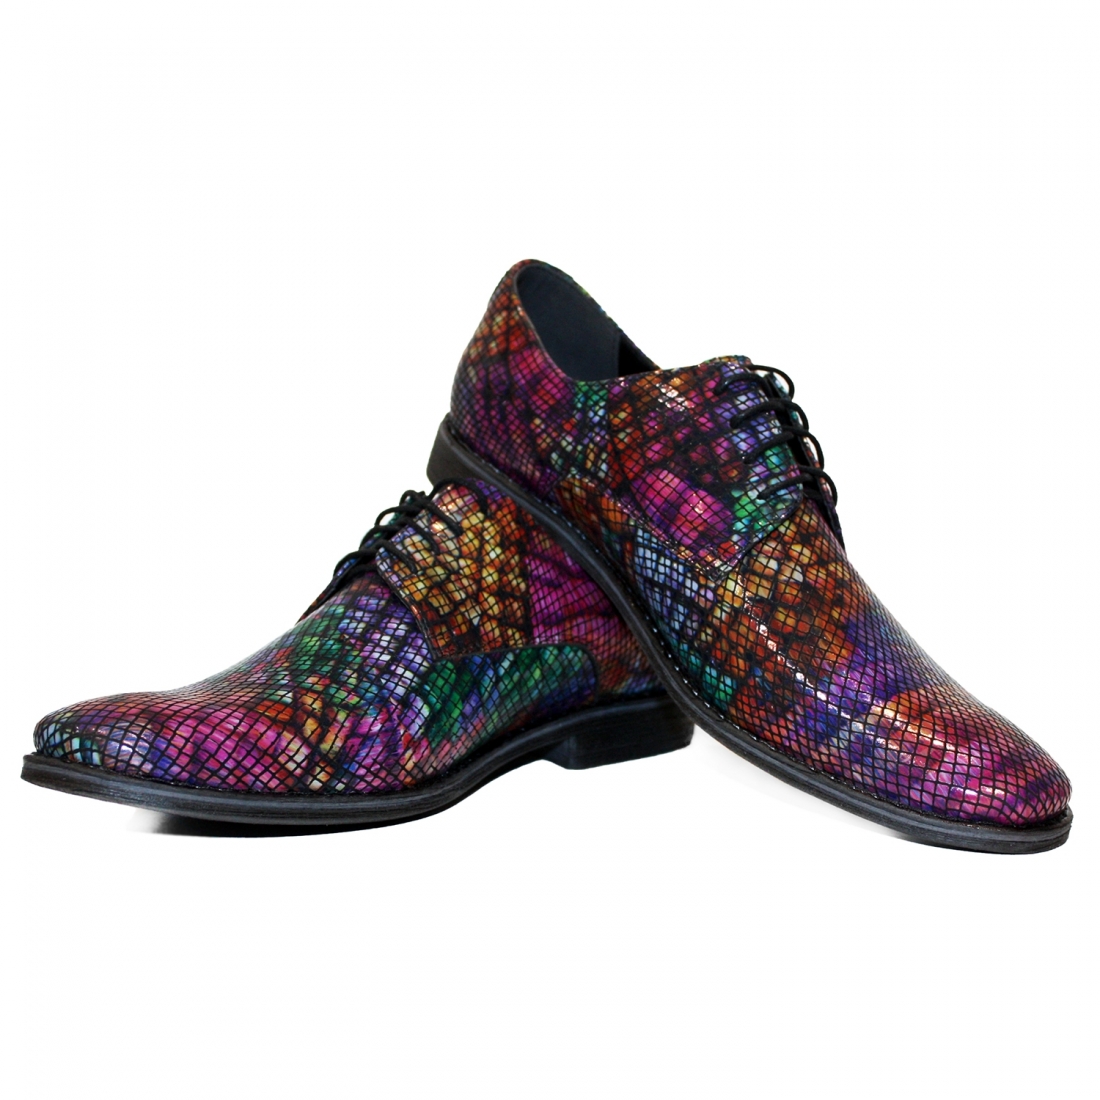 Modello Sireno - Schnürer - Handmade Colorful Italian Leather Shoes